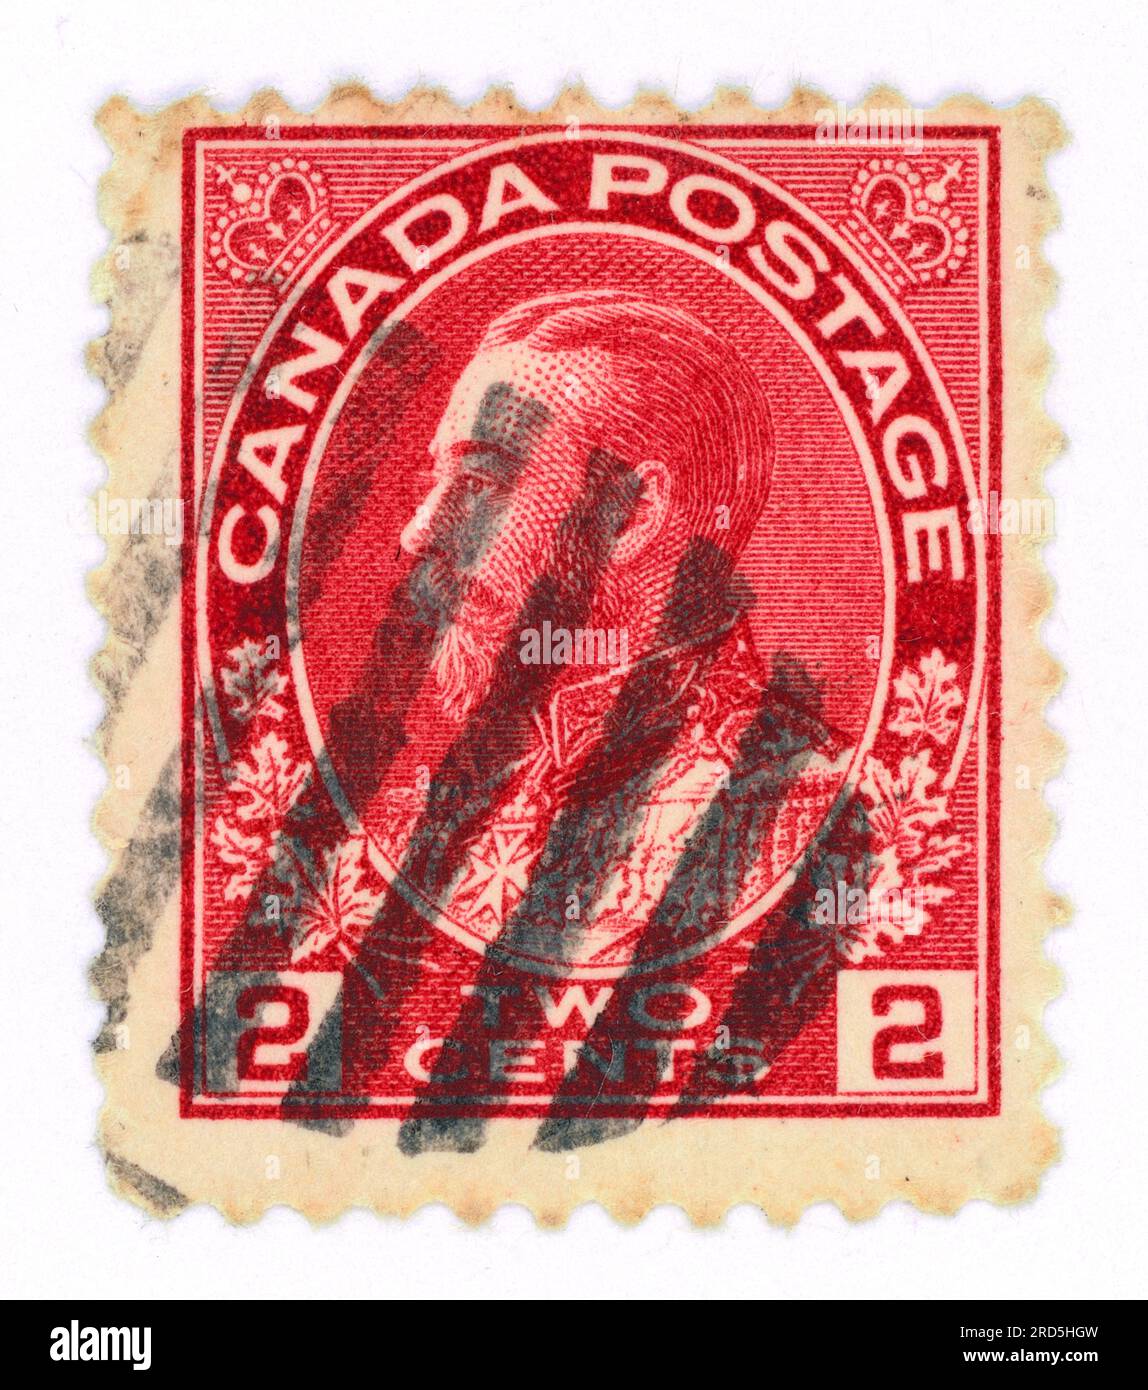 Roi George V (règne de 1910 à 1936). Timbre-poste émis au Canada dans les années 1910 Banque D'Images